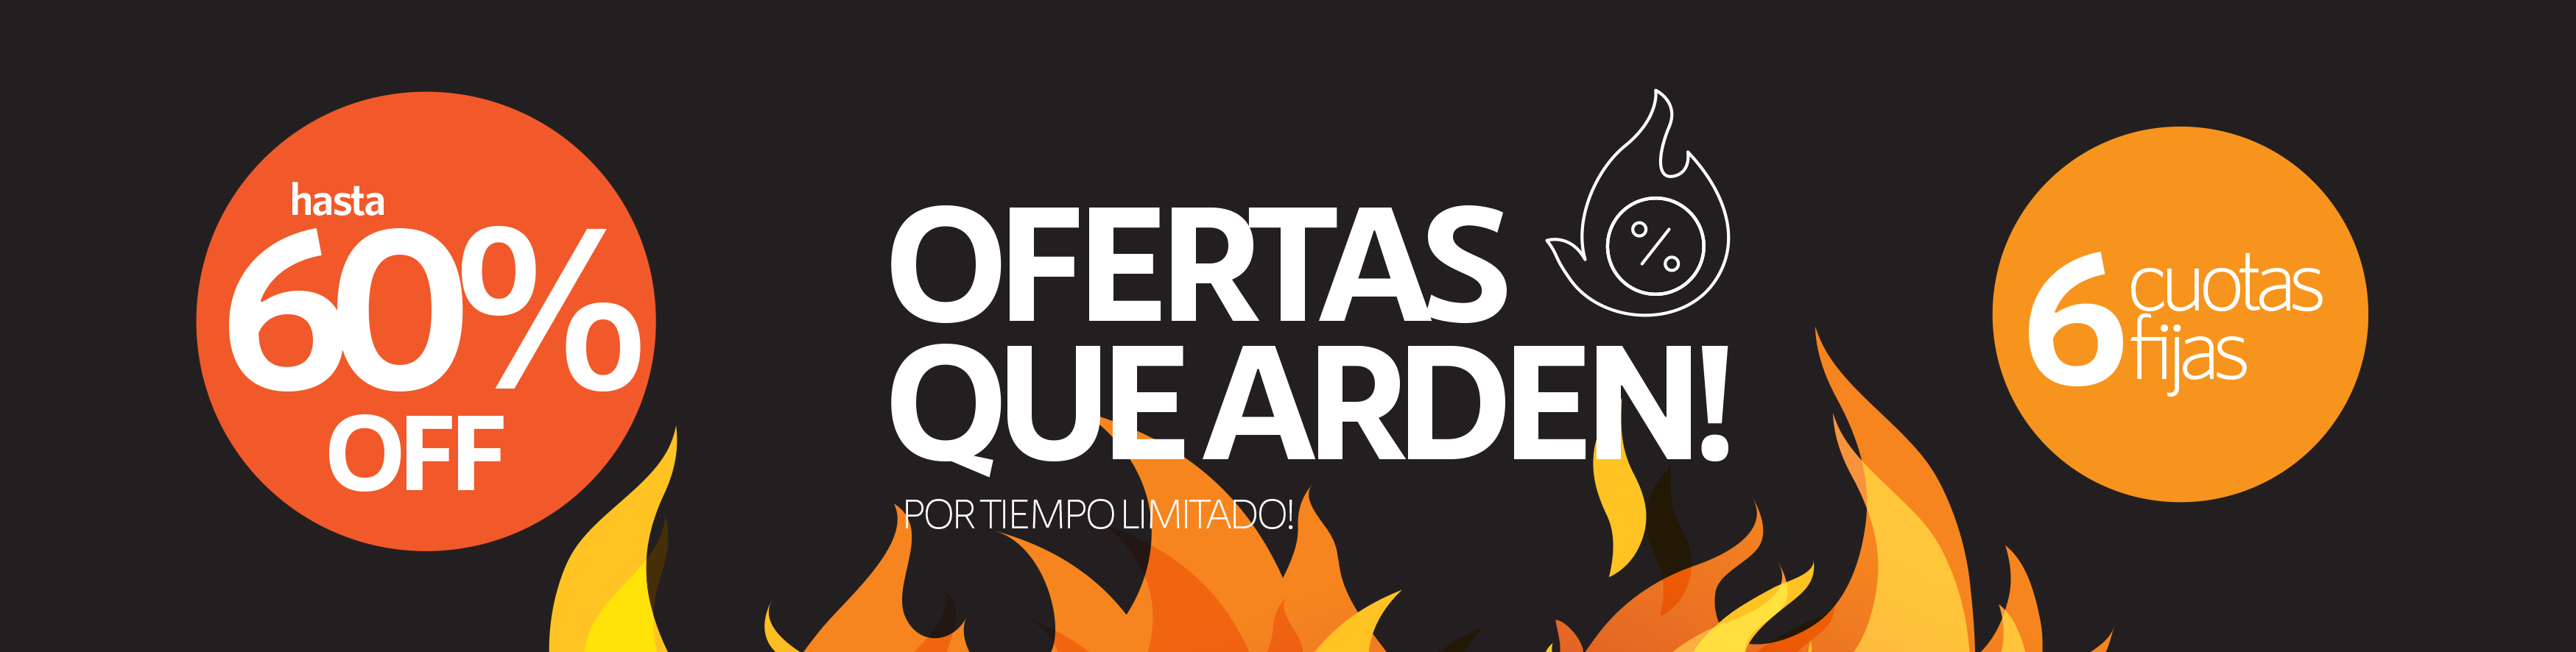 Banner OFERTAS QUE ARDEN !!  | GardenLife